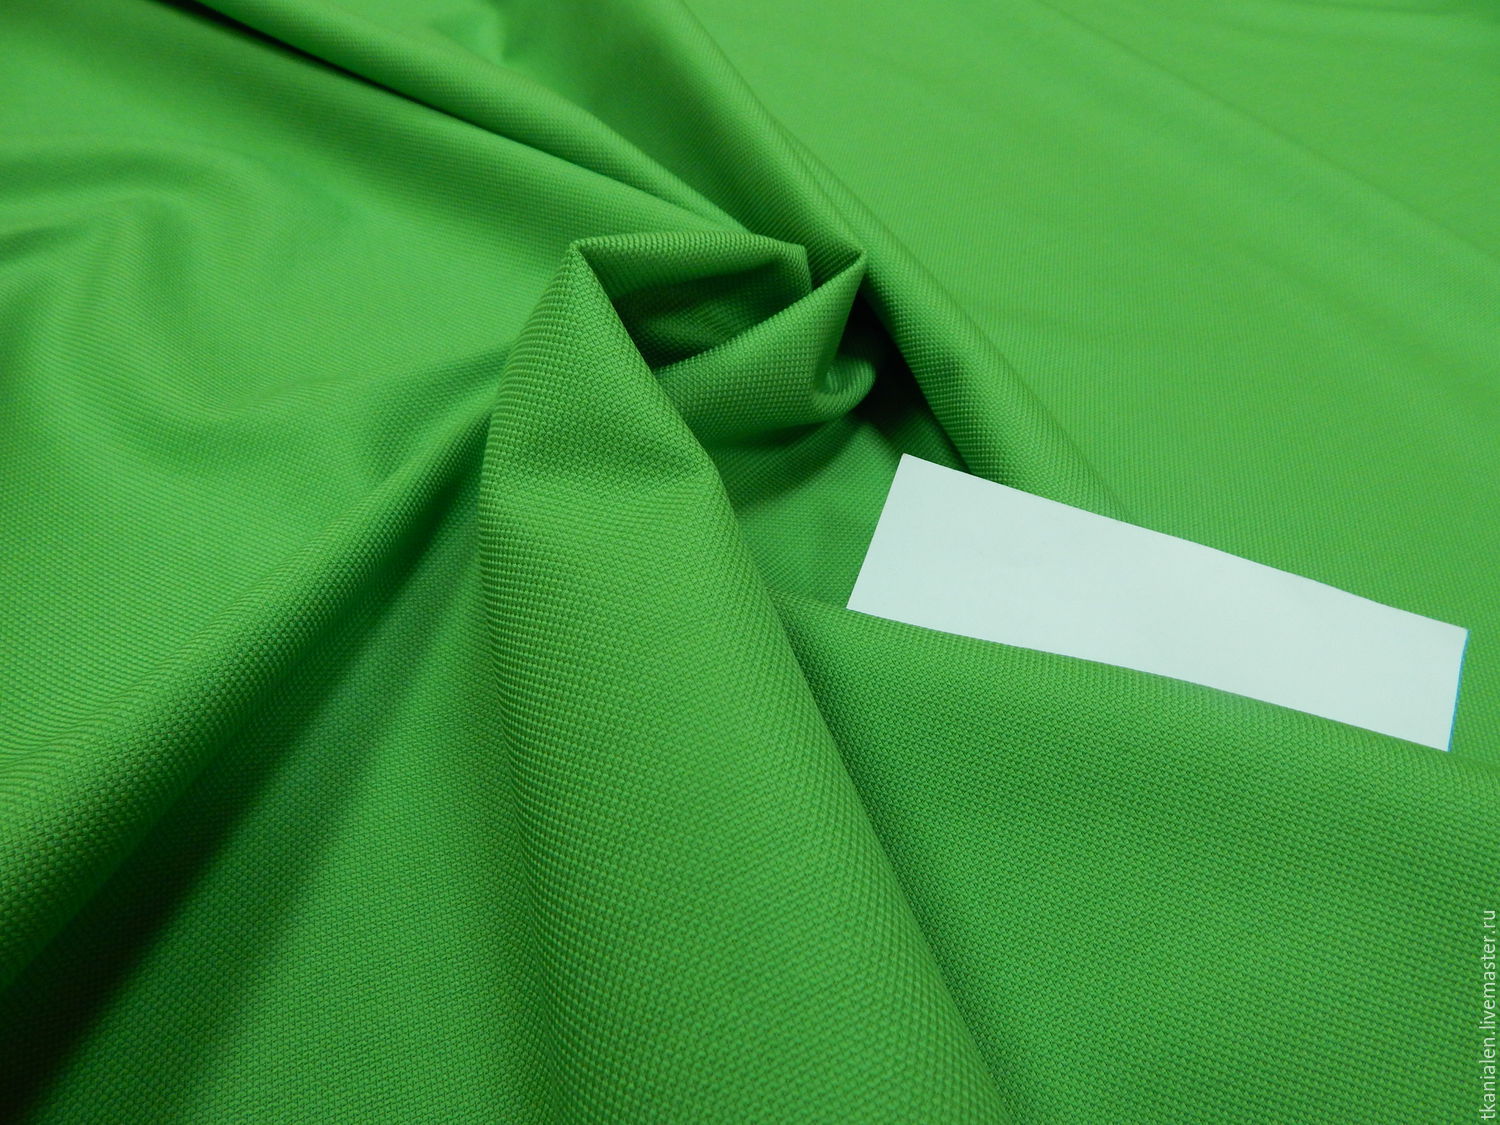 Хлопок зеленого цвета. Хлопок ткань зеленая. Ткань хлопчатобумажная зелёная. Салатовая ткань. Ткань салатовая хлопковая.